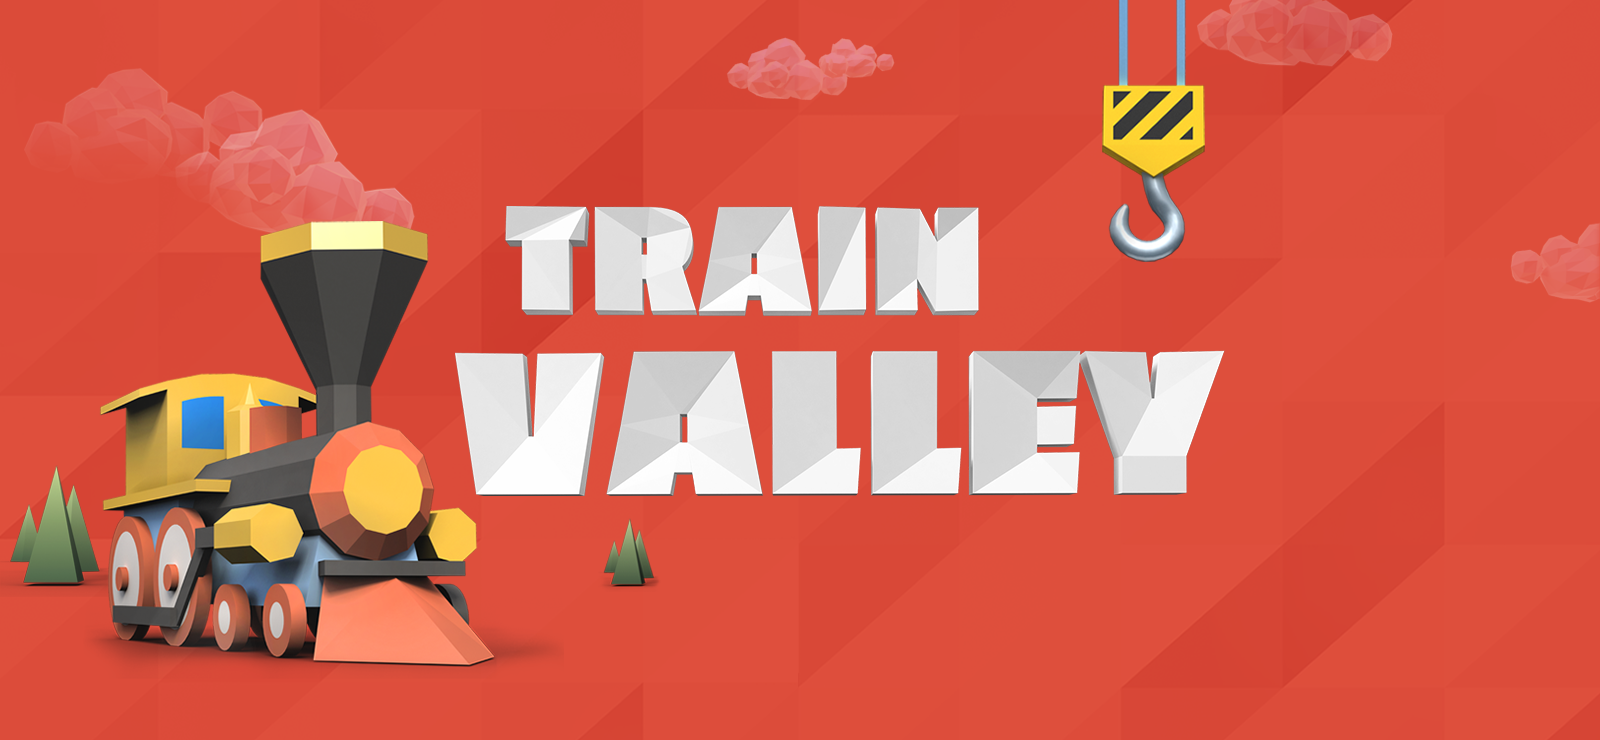 Train Valley